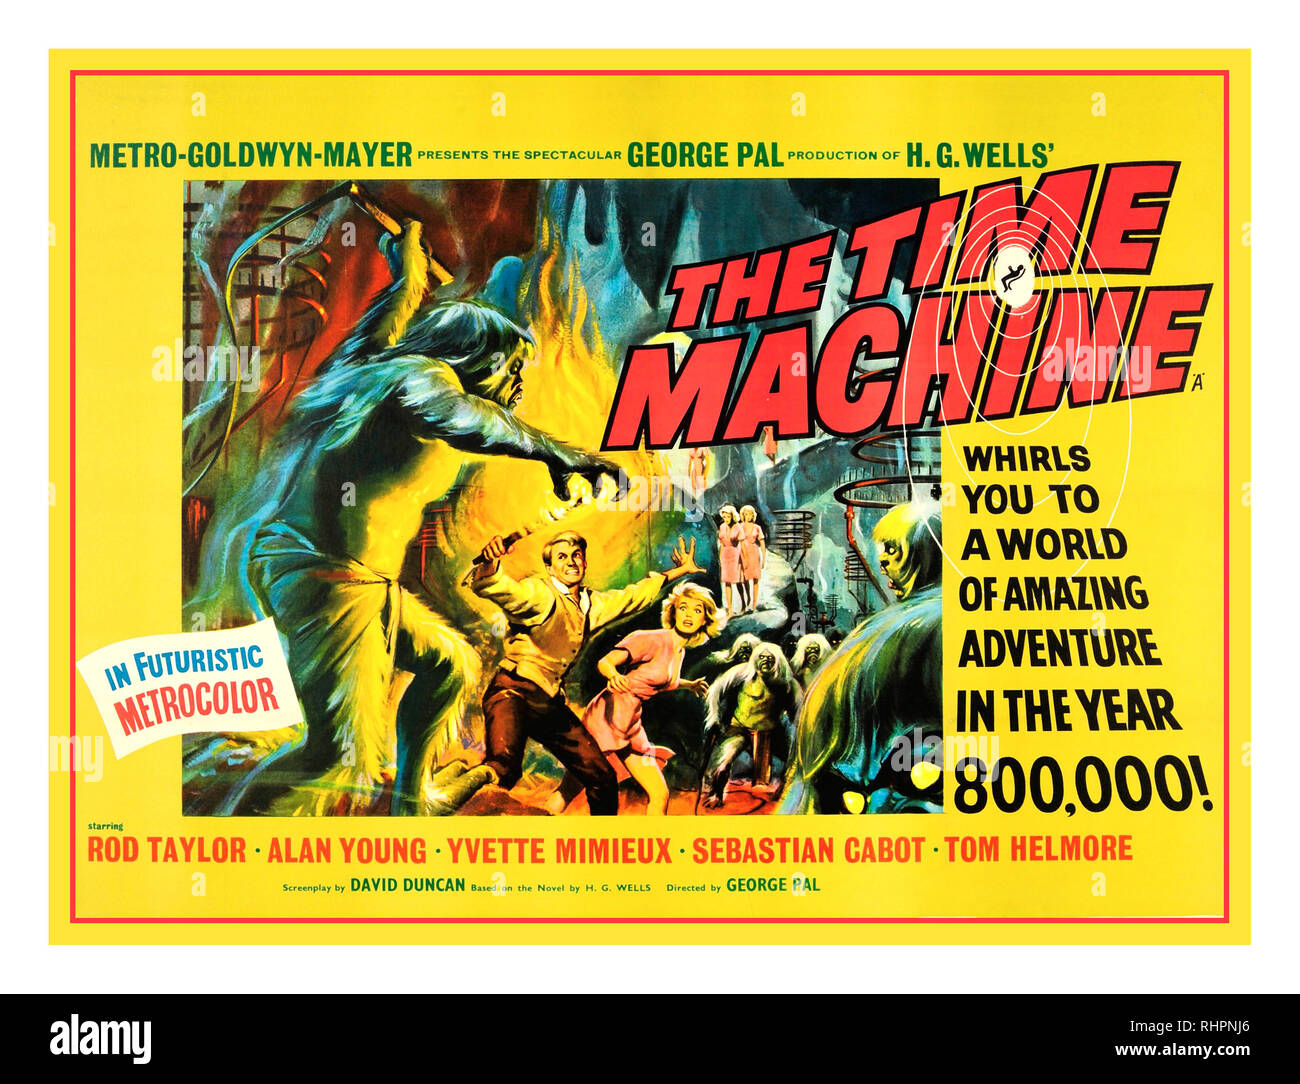 Film de science-fiction Vintage 1960 affiche de film pour "Le temps machine' par H.G. Wells la machine à remonter le temps (aussi connu comme promotionally H. G. Wells' La Time Machine) est un film américain de science-fiction 1960 dans 'Metrocolor futuriste' de la Metro-Goldwyn-Mayer, produit et réalisé par George Pal, qui stars Rod Taylor, Yvette Mimieux, et Alan Young. Banque D'Images